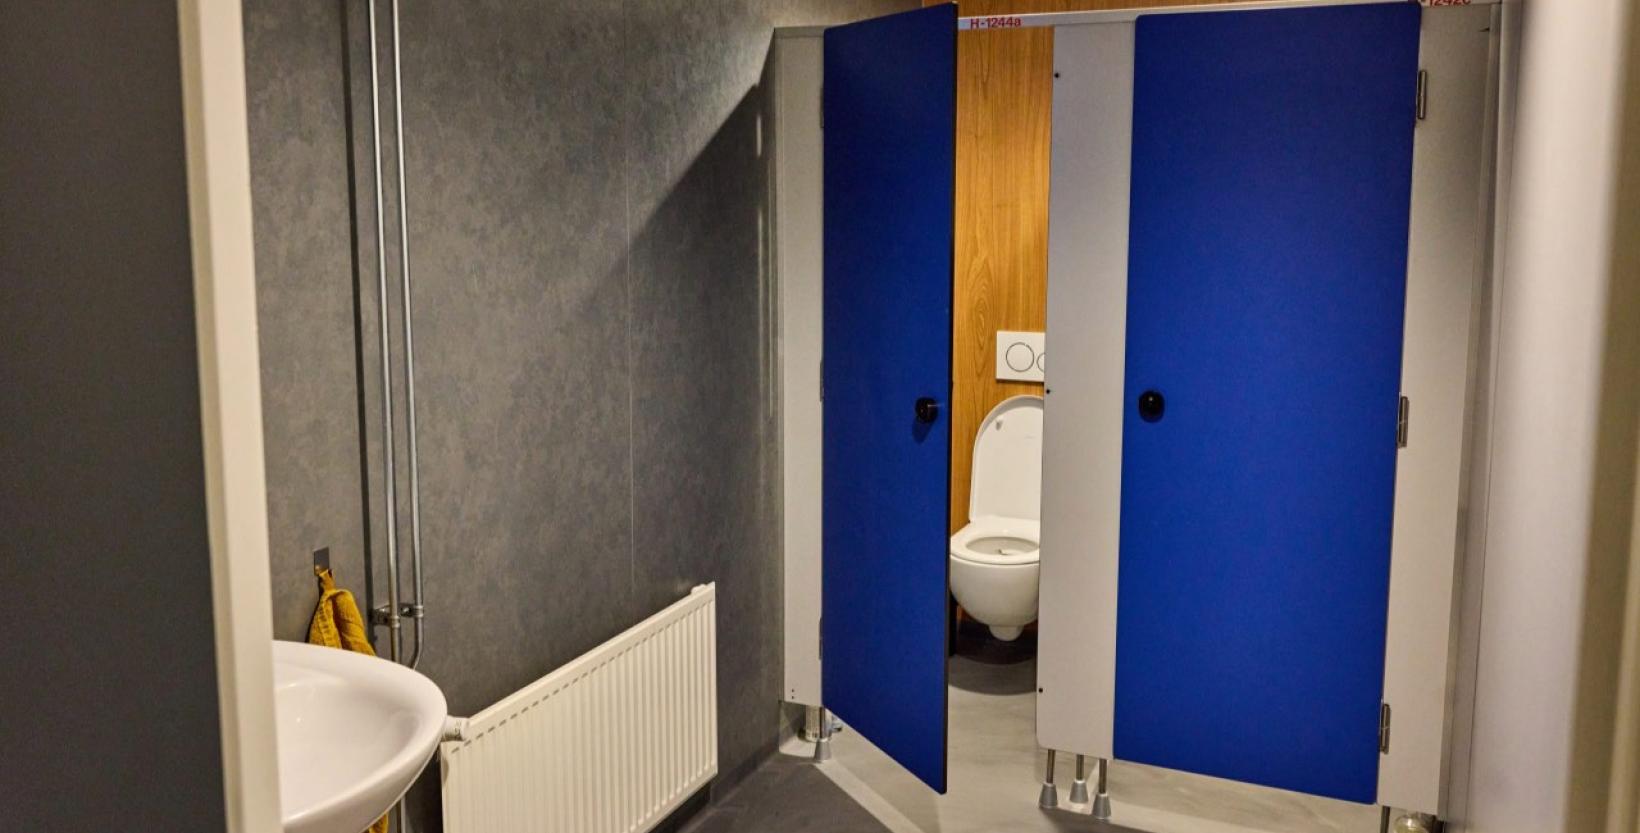 Op de foto de toiletruimte van Honkbalverening Op Zuid met de blauwe herbruikte deuren van het Erasmus MC